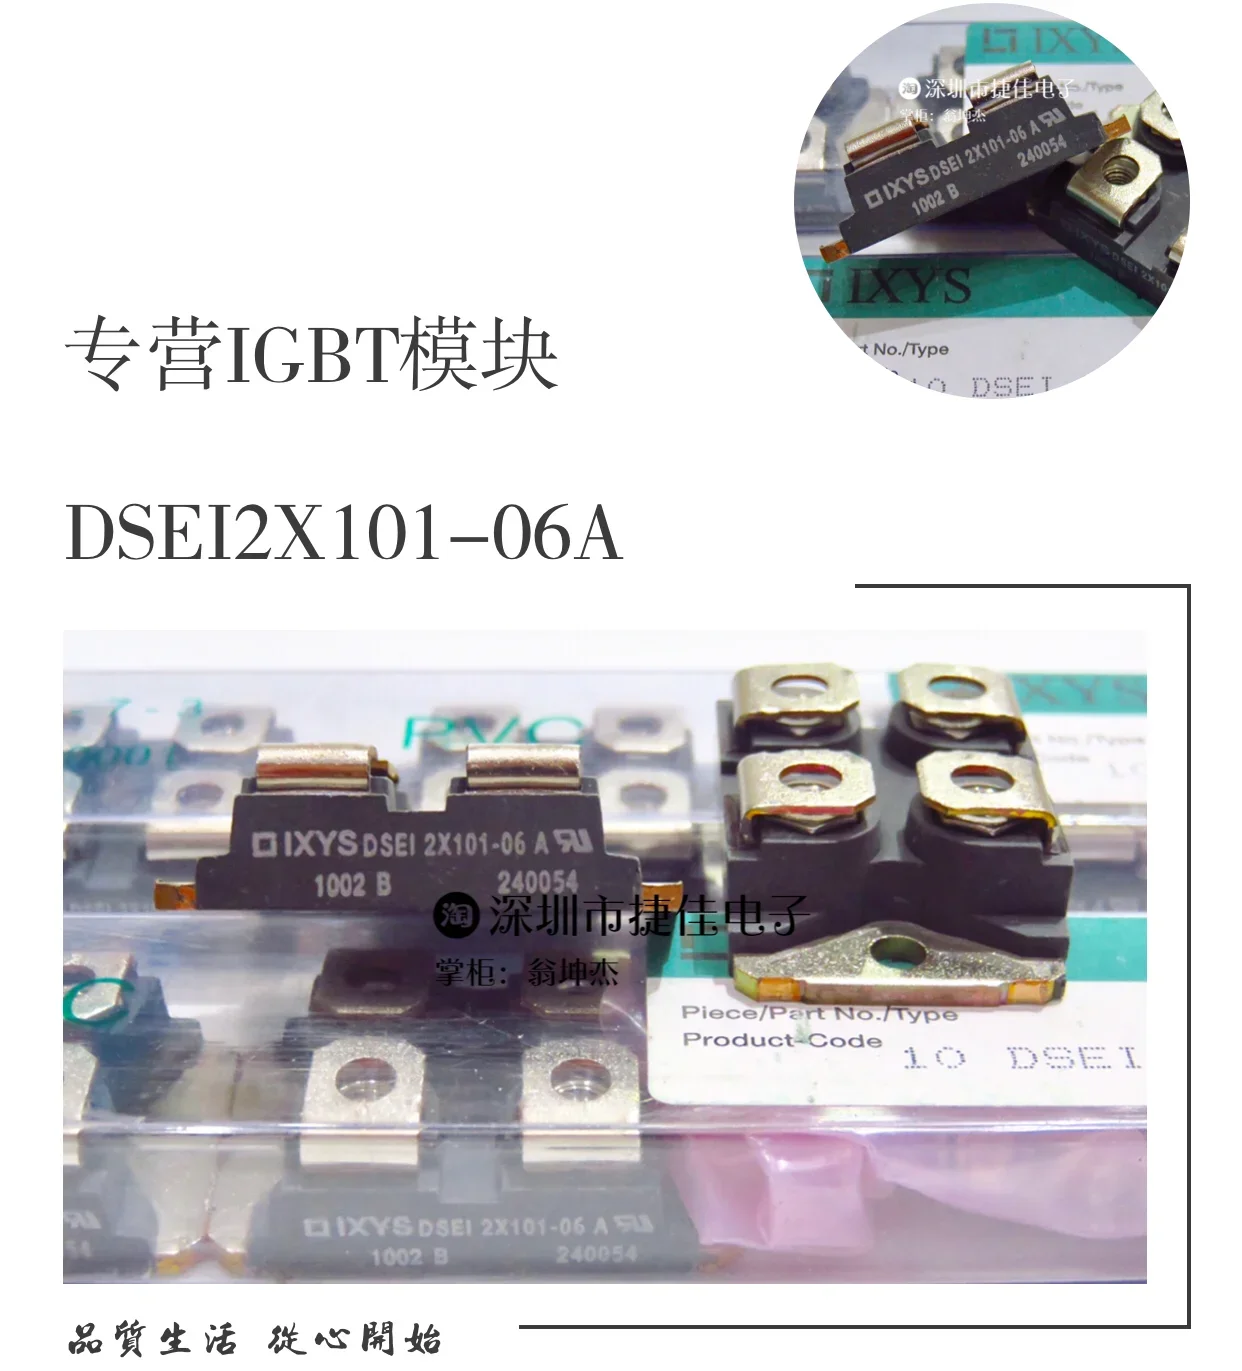 

DSEI2X101-12A DSE12X121-02A DSEI2X61-06C DSE12X61-12B 100% new and original